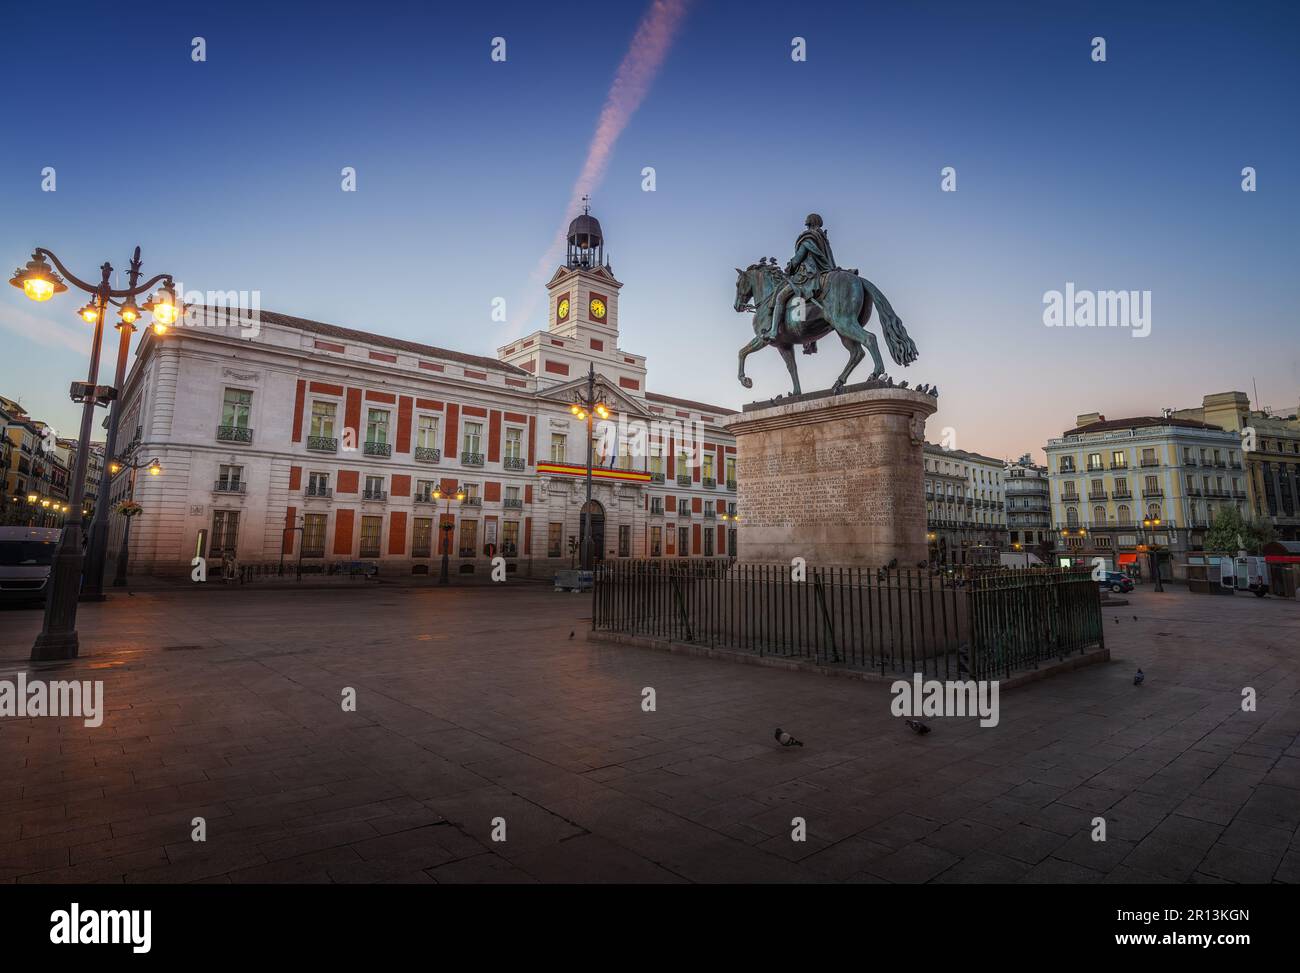 Puerta del Sol bei Sonnenaufgang mit Denkmal für König Karl III. (Carlos III) und königlichem Haus des Postamts - Madrid, Spanien Stockfoto